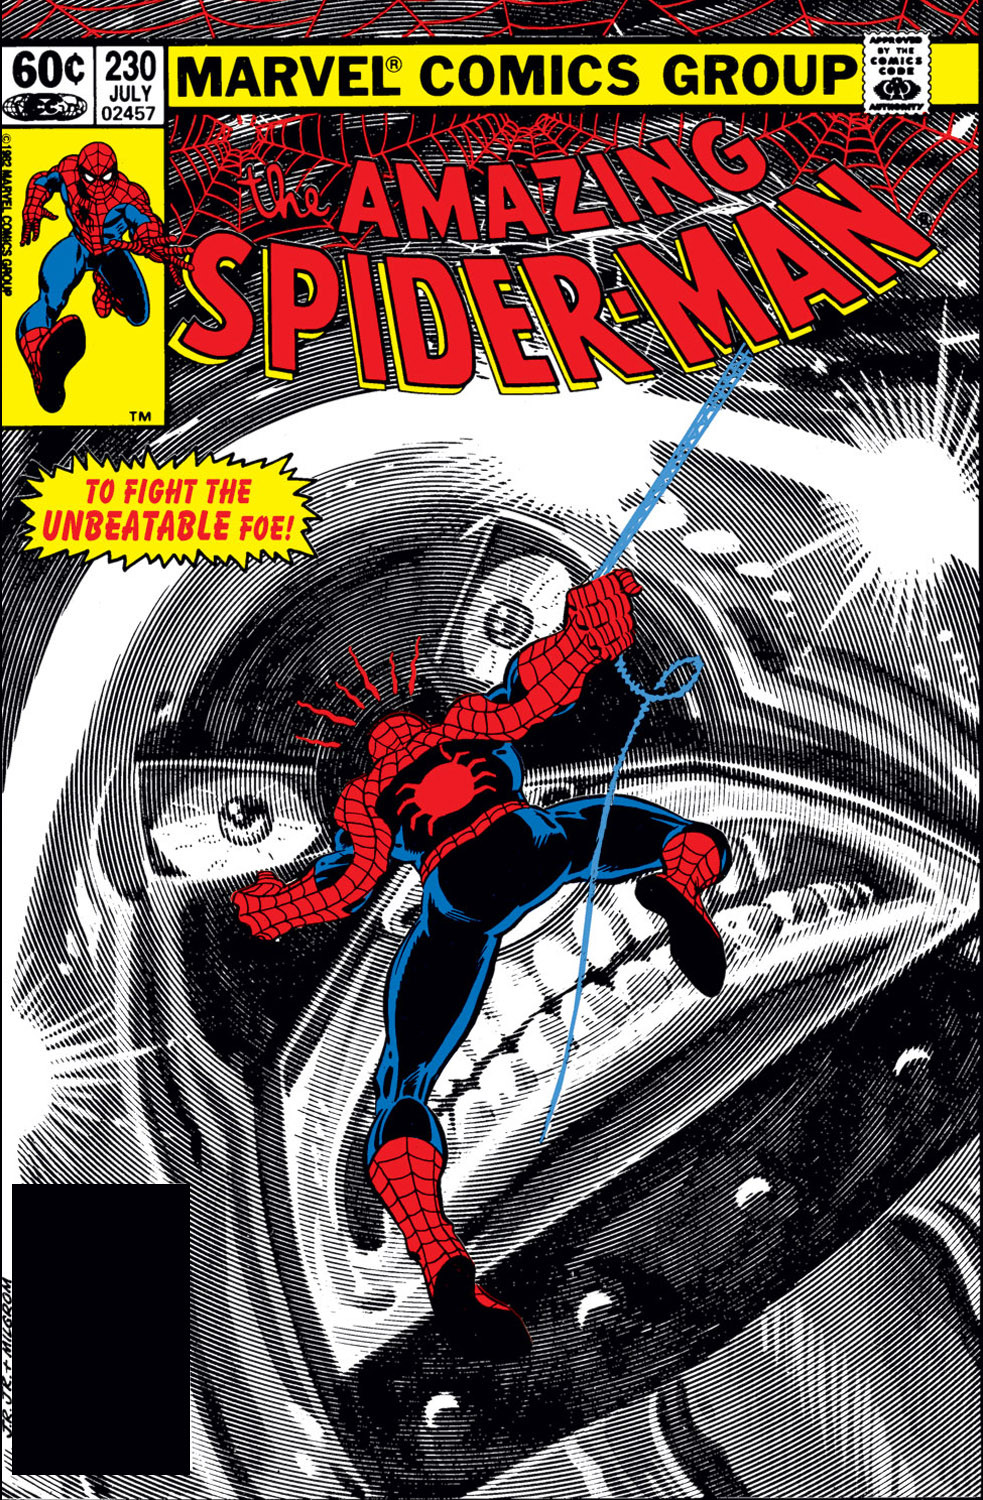 Image result for spider man juggernaut